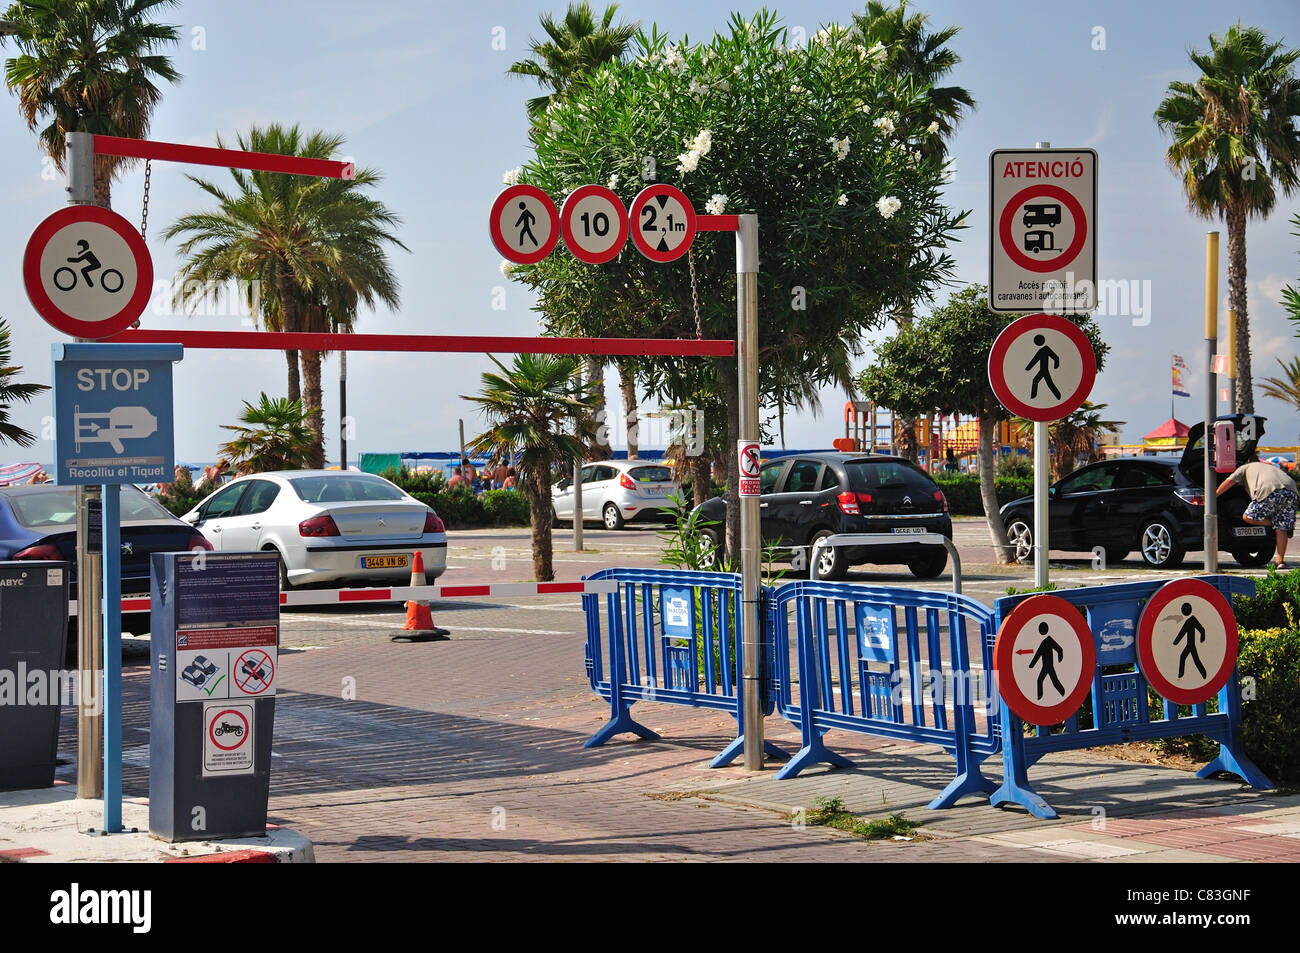 Car park entrance on Paseig de Jaime 1, Salou, Costa Daurada, Province of Tarragona, Catalonia, Spain Stock Photo